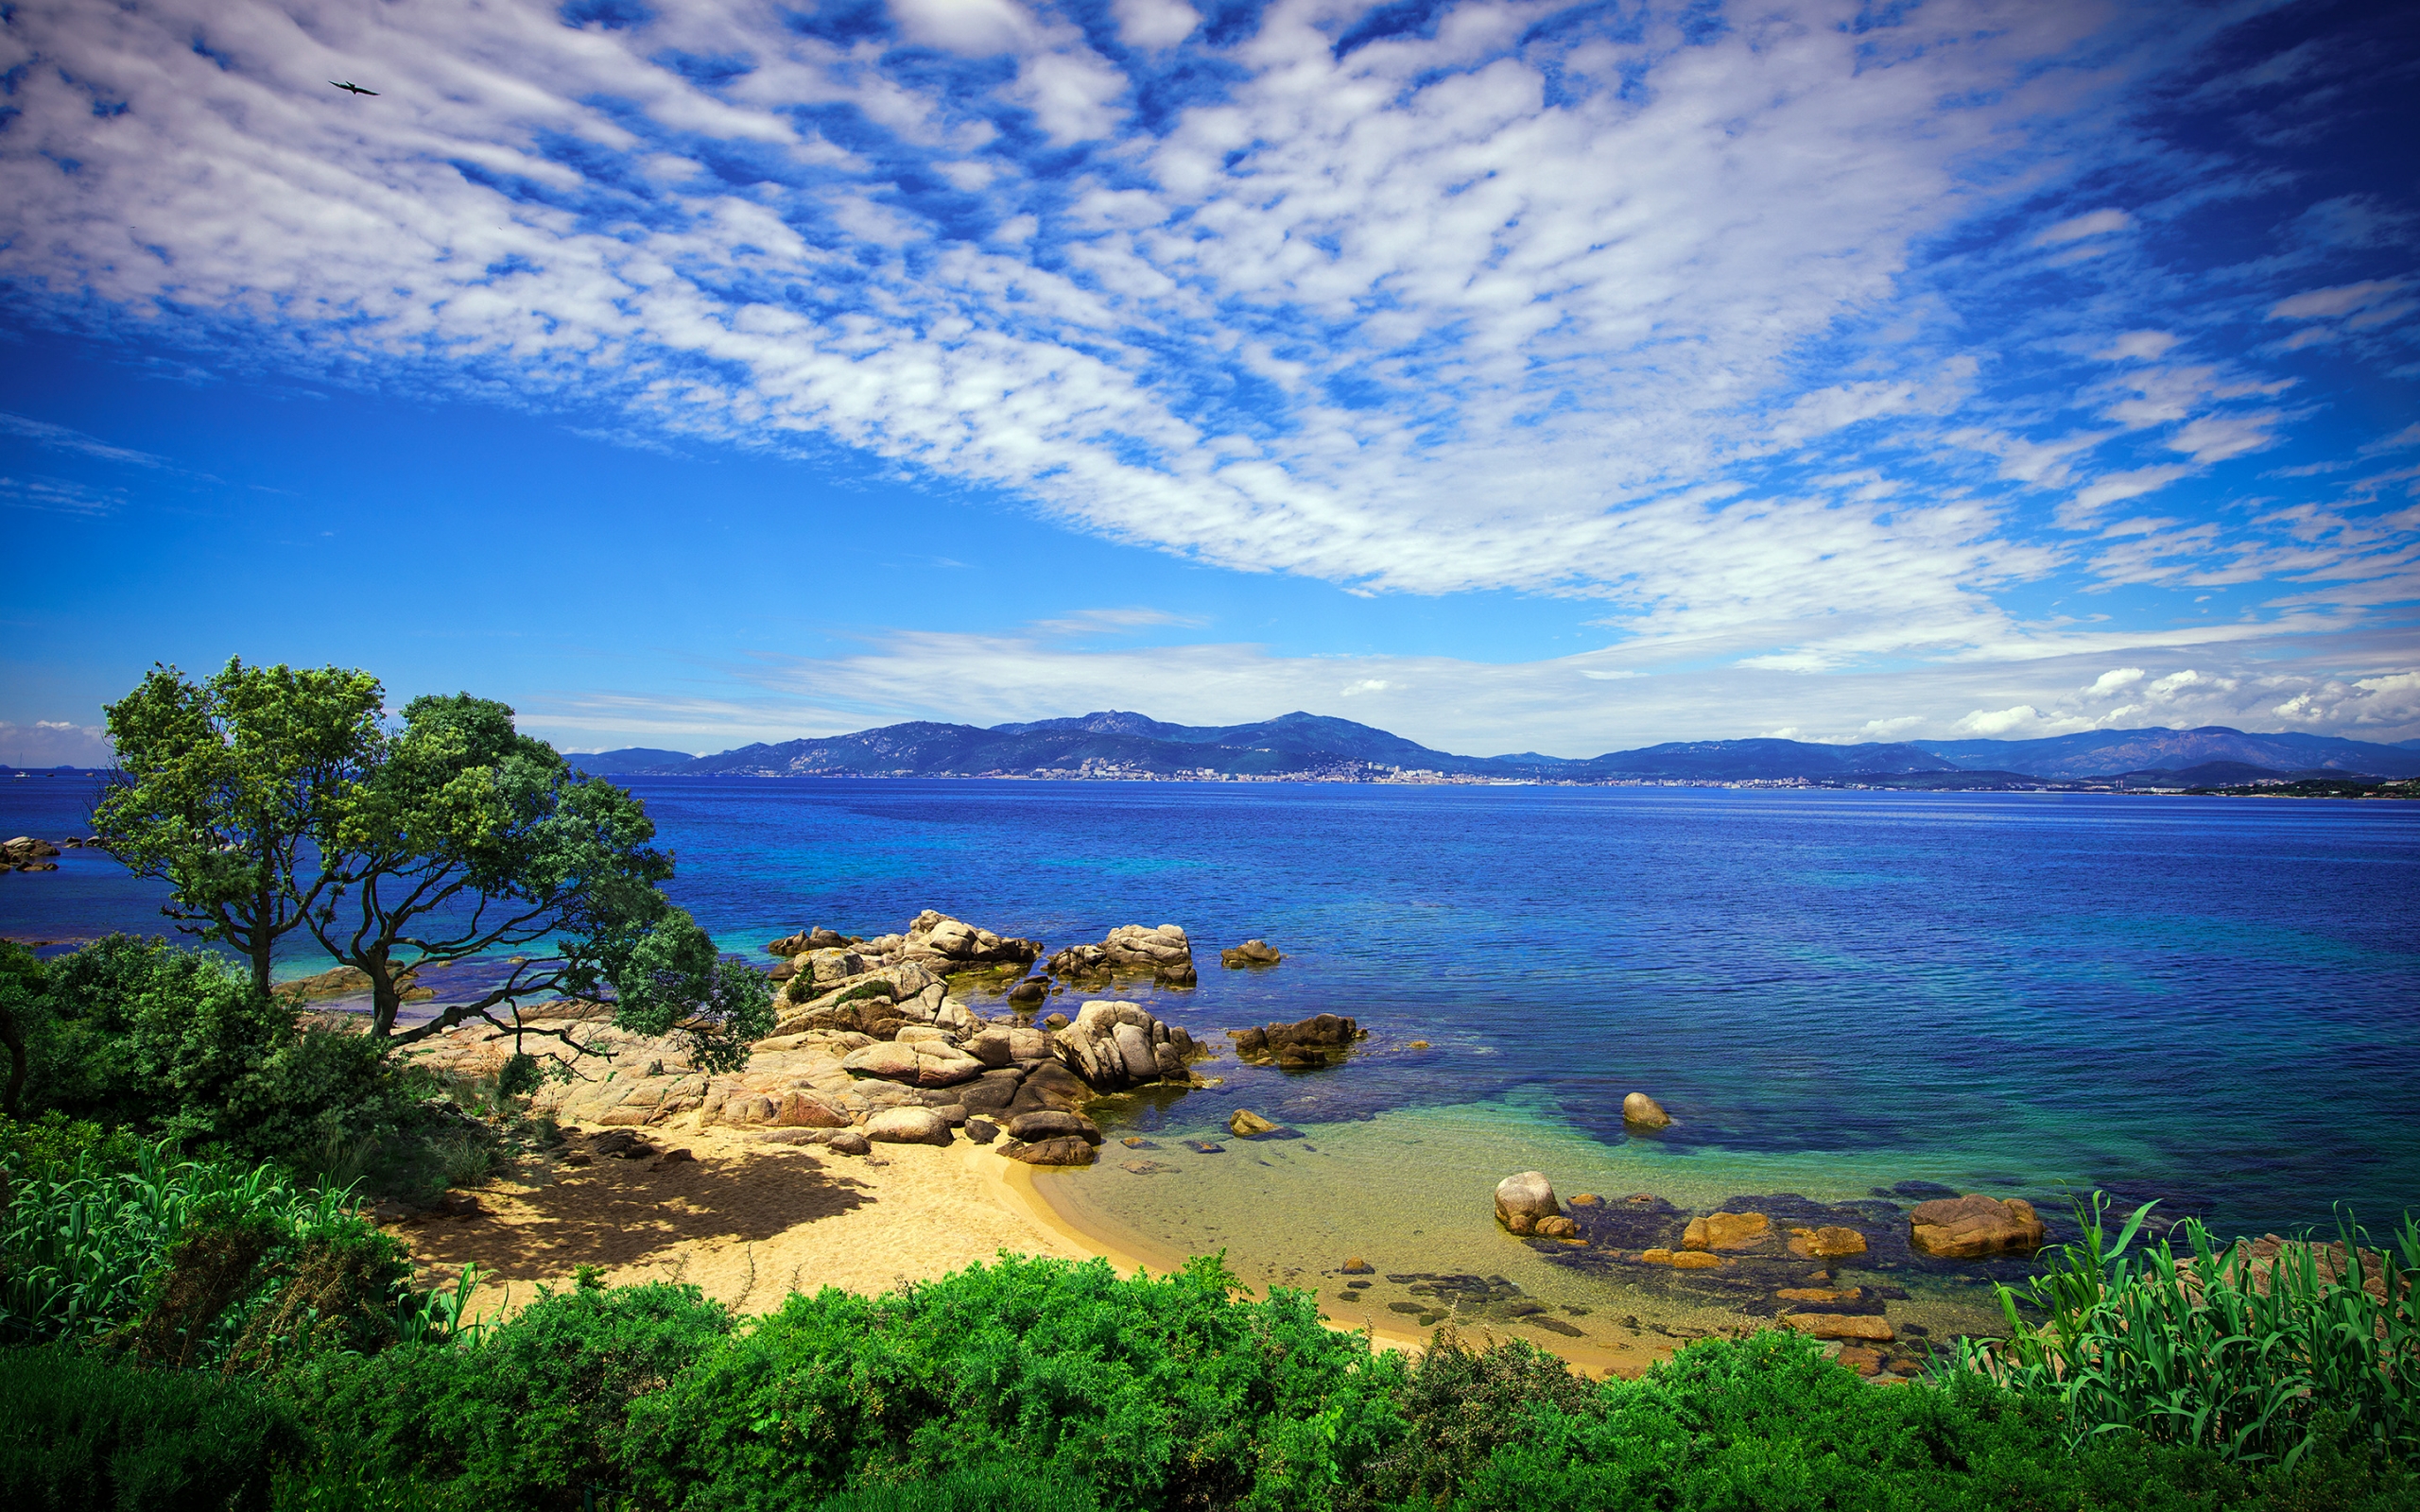 Coast of Porticcio for 2560 x 1600 widescreen resolution